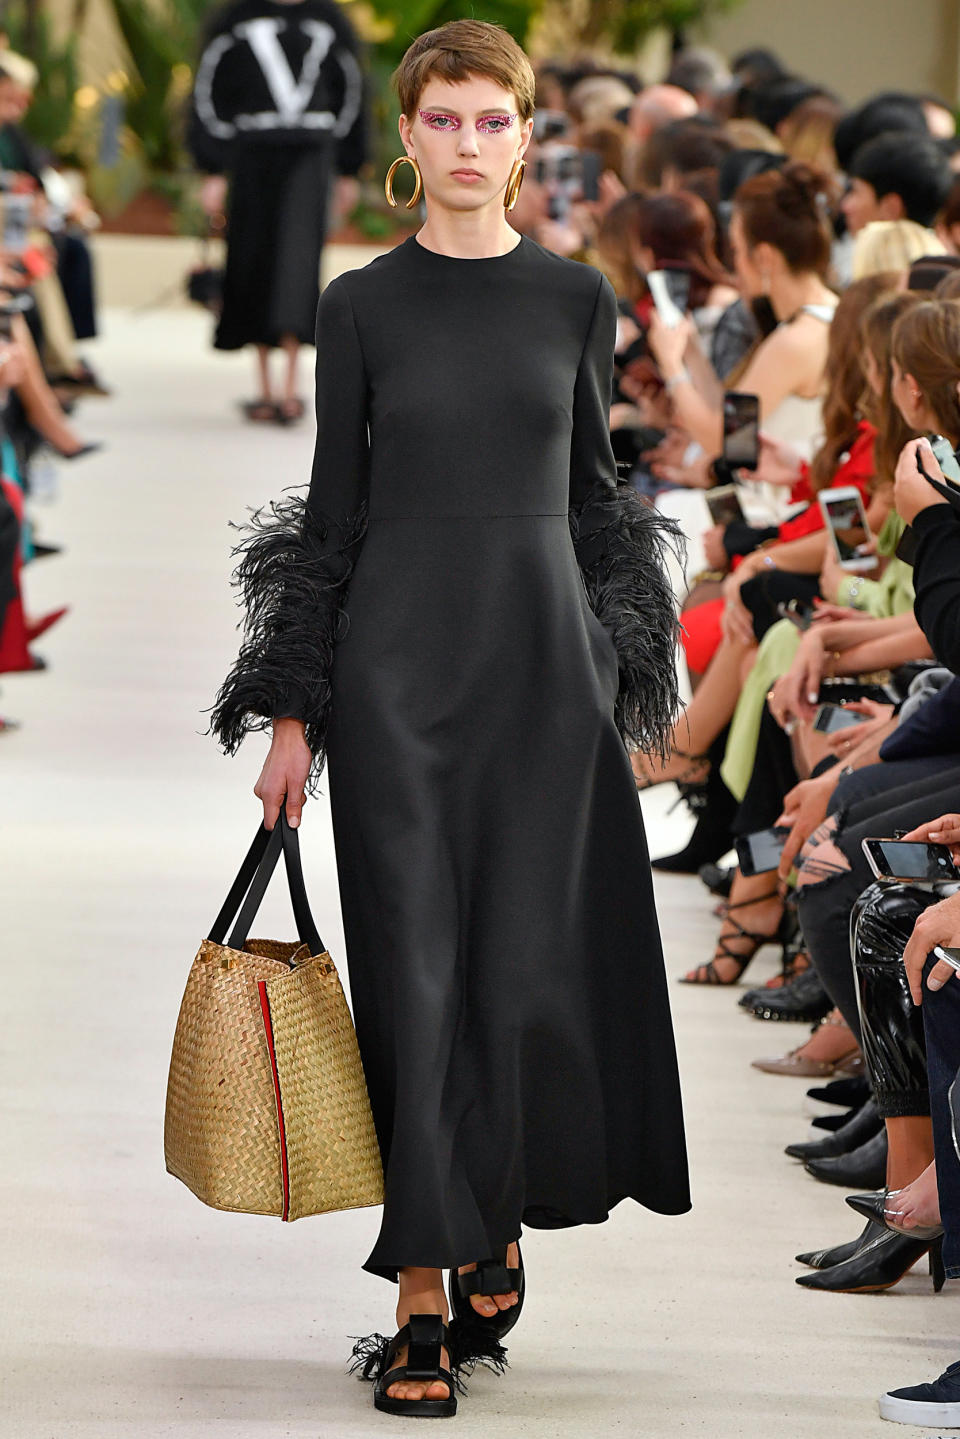 <p>Eigentlich glänzte Niederländerin Nikki Tissen mit einer dunkelblonden, langen Mähne. Für eine Modenschau von Prada bekam sie aber einen Pixie-Cut mit kurzem Pony verpasst. Was zunächst ungewohnt war, wurde zu ihrem Markenzeichen. Damit ziert sie nun Laufstege von Givenchy, Dior und Lacoste. (Bild: ddp Images) </p>